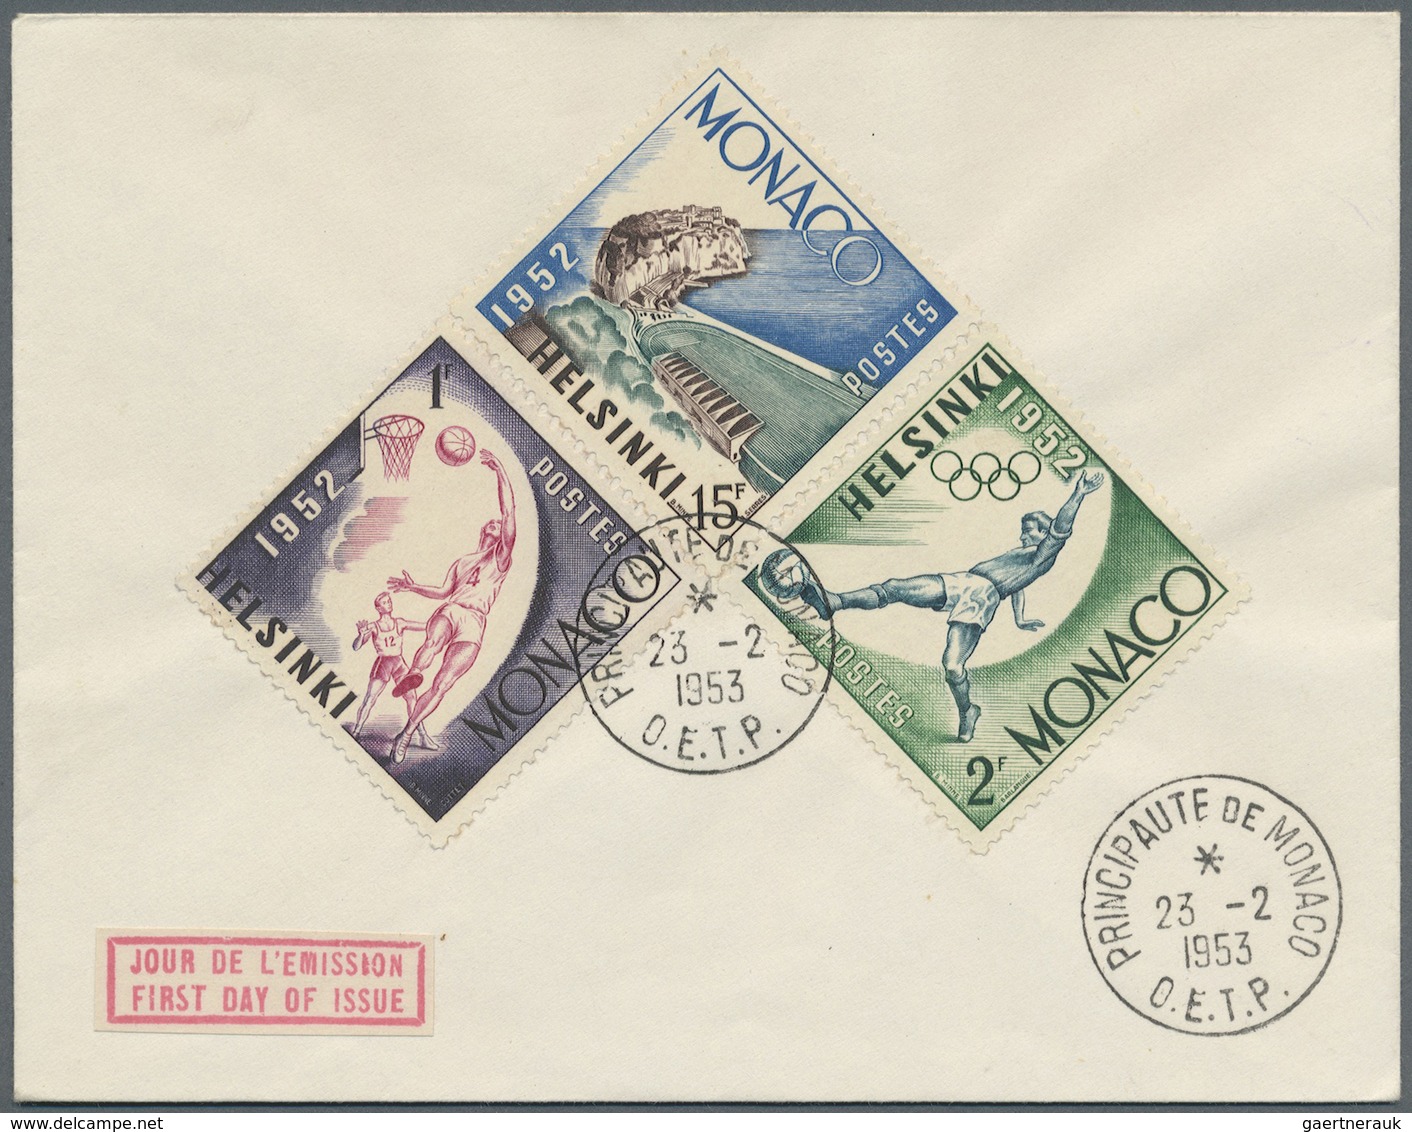 Br Frankreich: 1925/1962, Frankreich und Kolonien, Partie von ca. 57 Belegen, dabei dekorative Flugpost